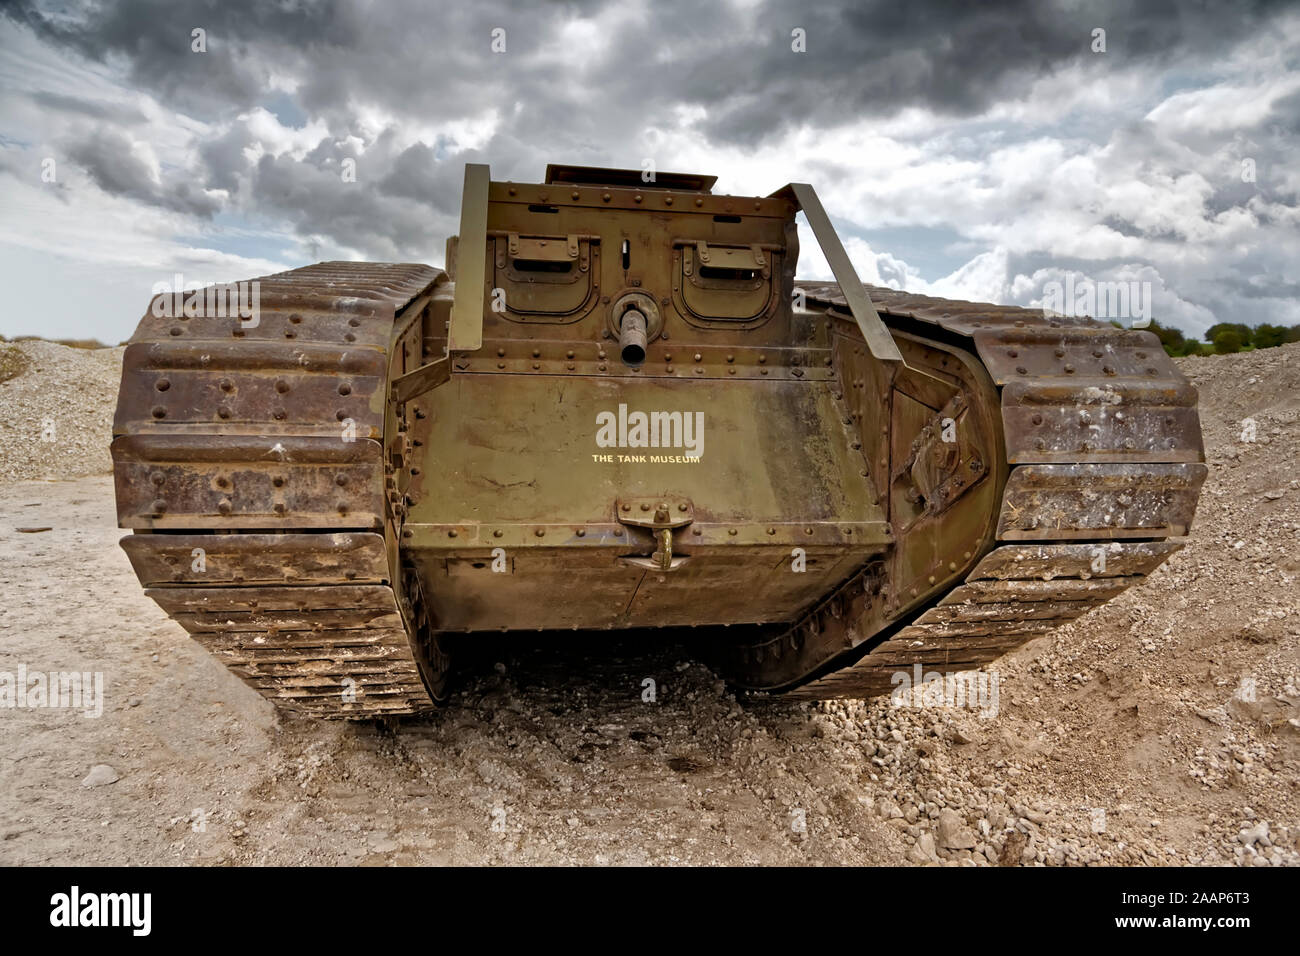 Volle Größe Der bovington der Tank Museum, die Replik einer WW1 British MK IV Tank, der im Film 2011 "Krieg Pferd" abgebildeten Empfohlene Stockfoto